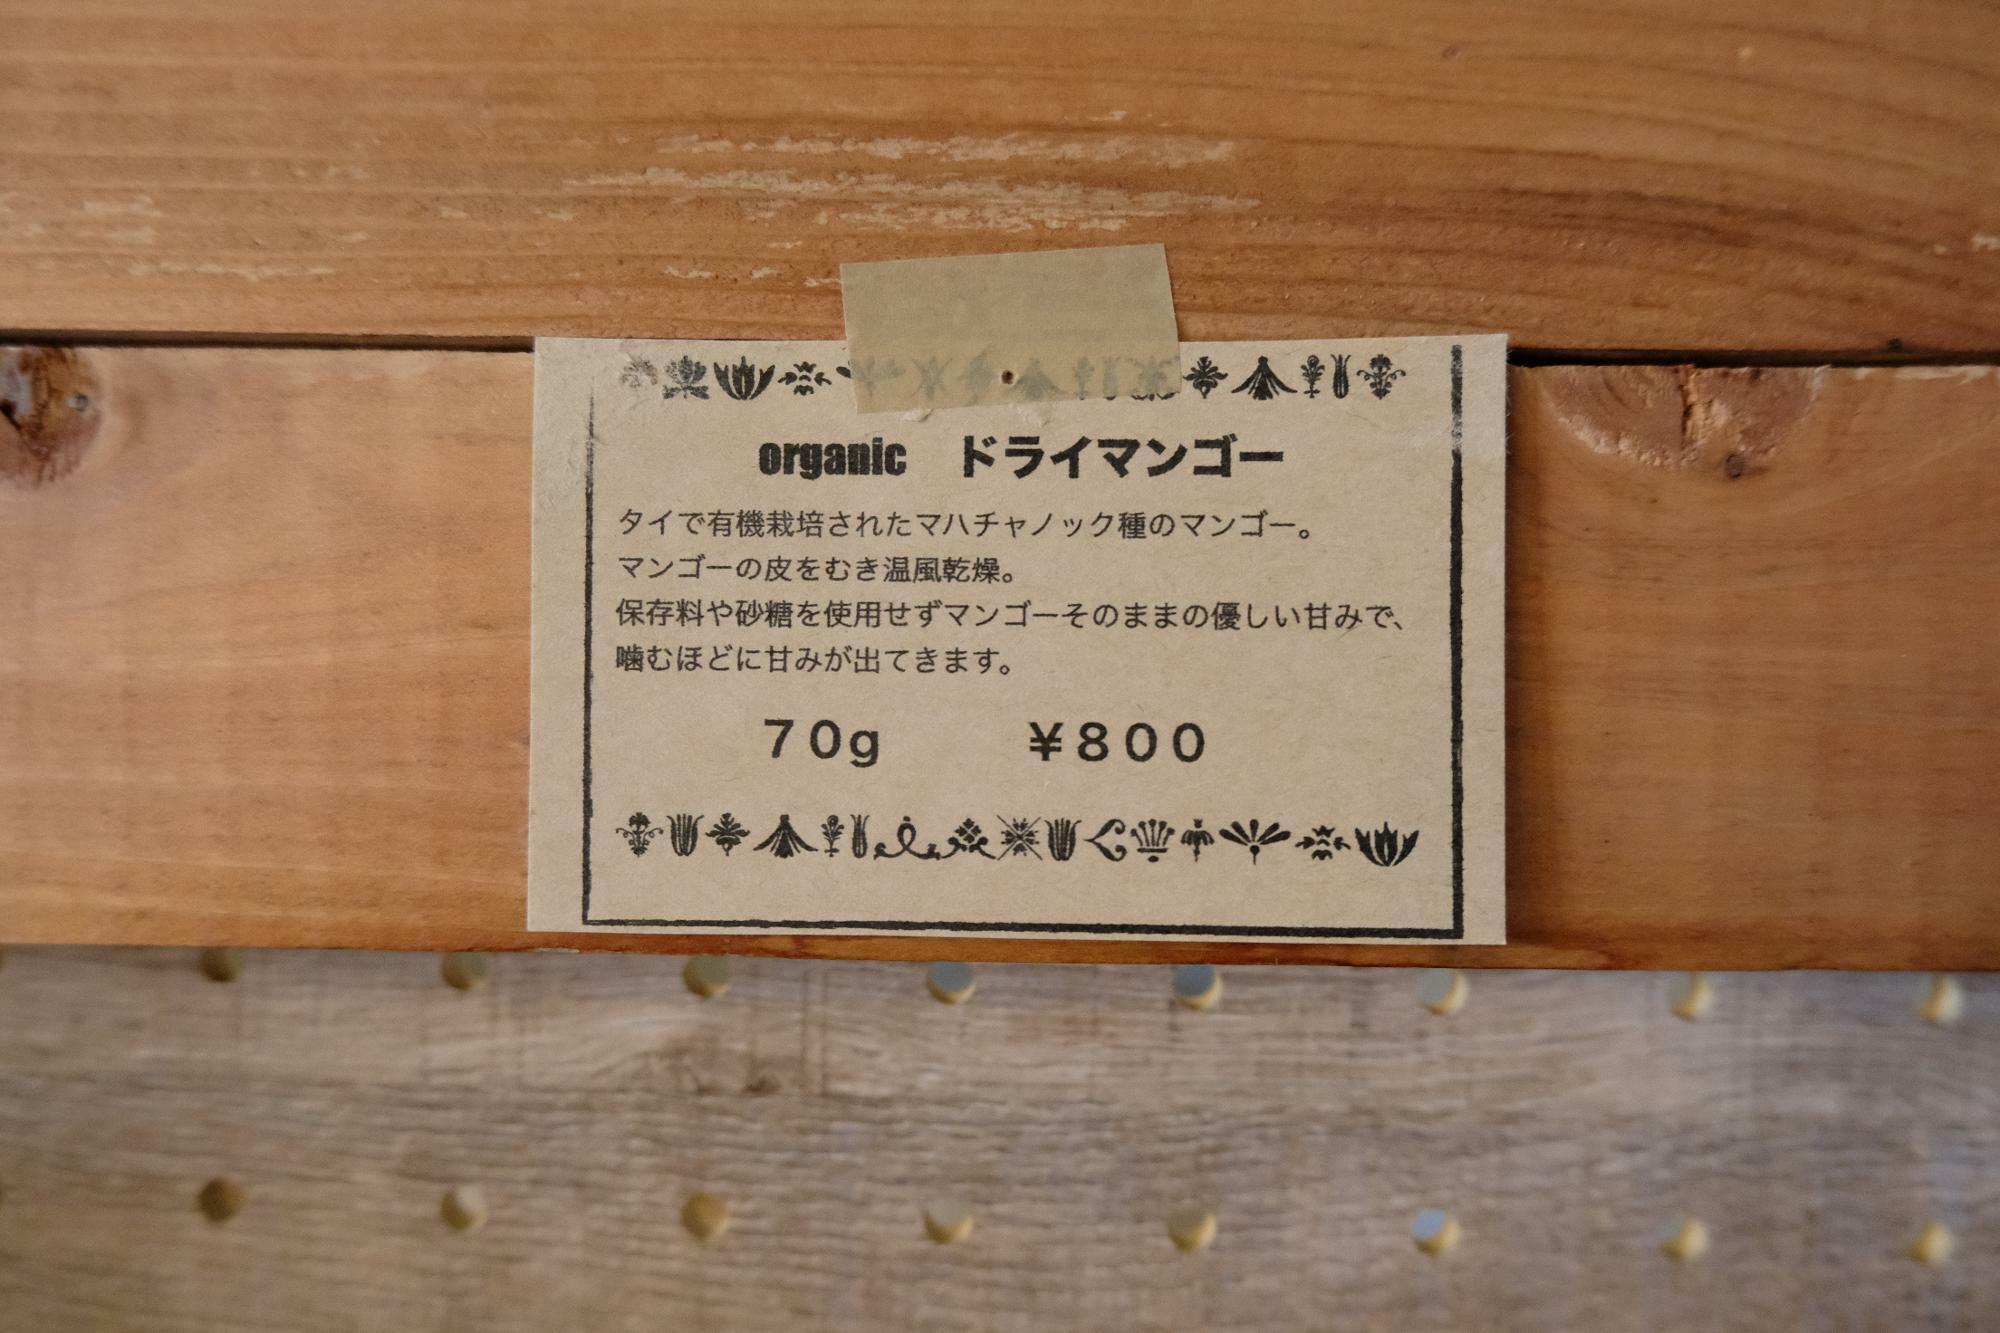 「オーガニック ドライマンゴー」70g 800円(税込)